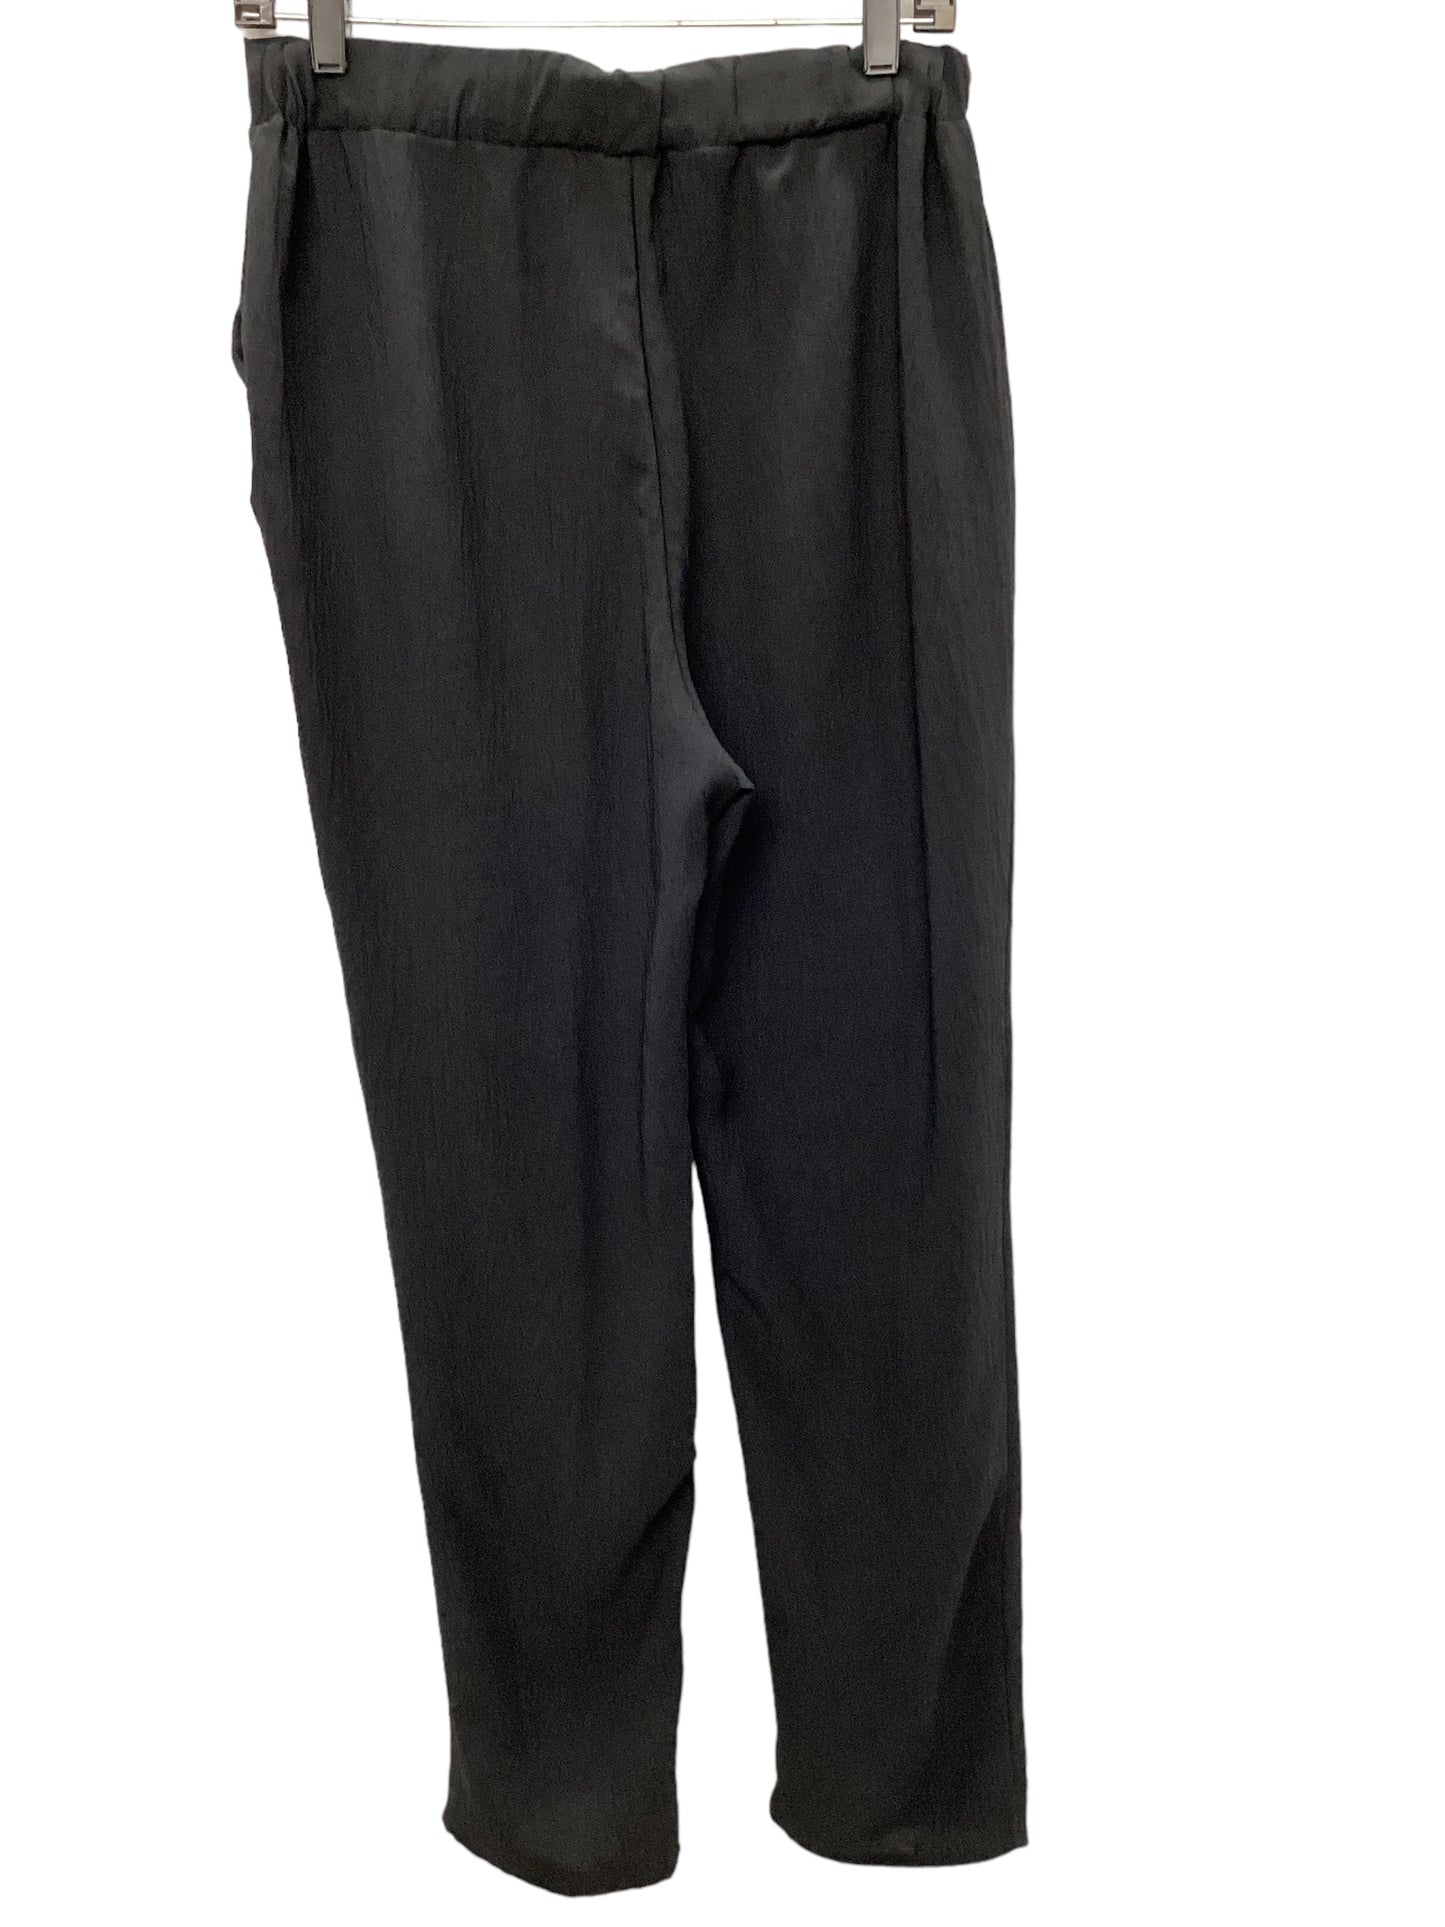 Pants Linen By Cme  Size: L